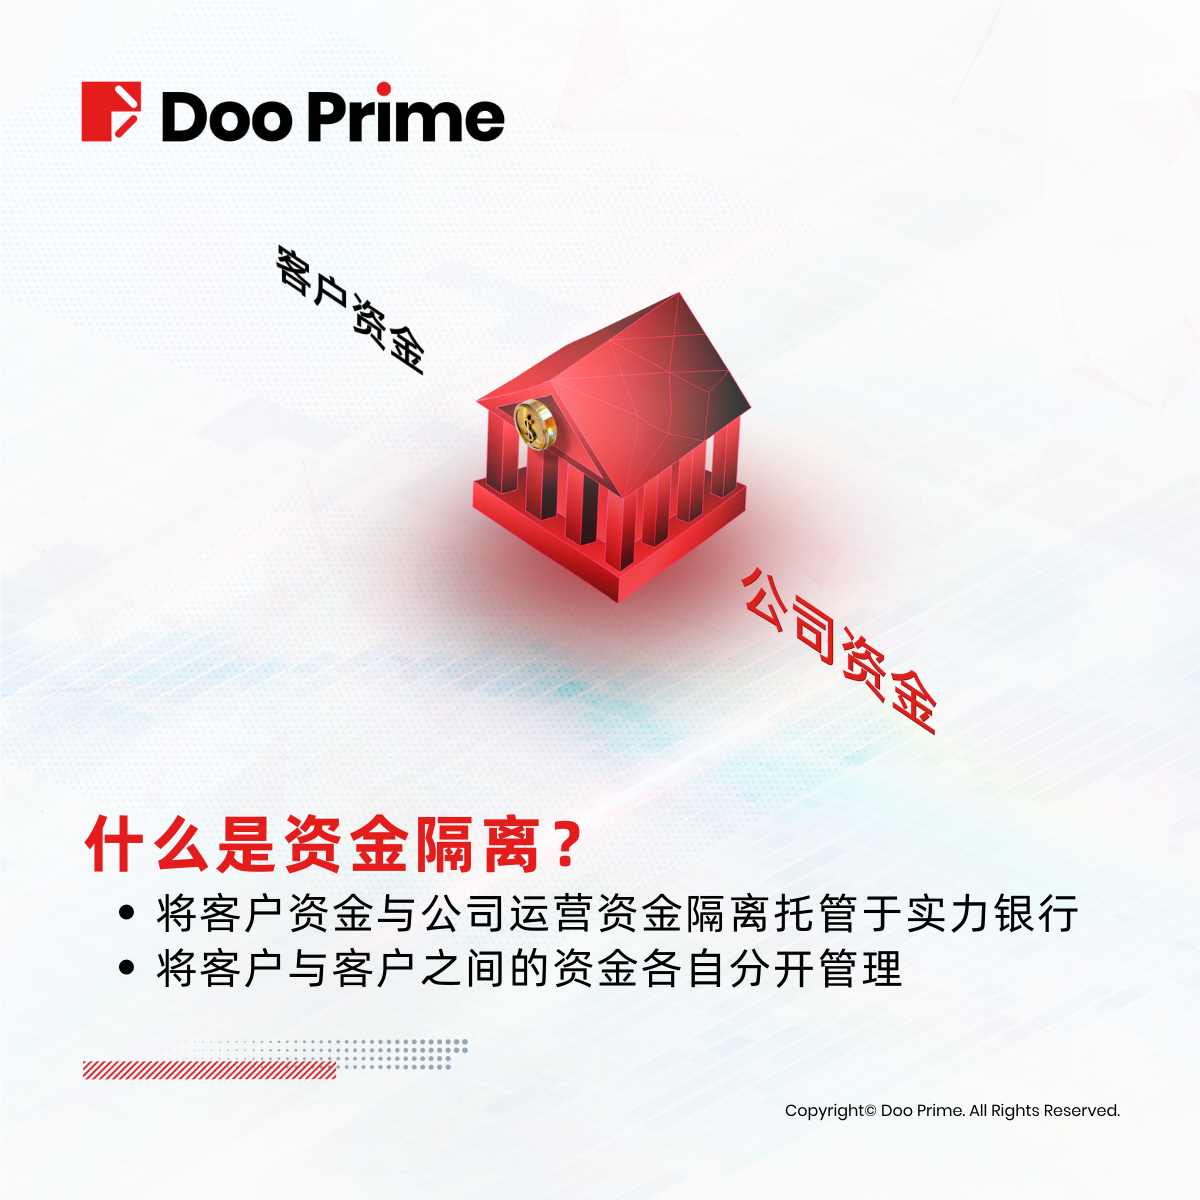 资金安全 | Doo Prime 全方位守护资金安全，赋能投资者交易未来